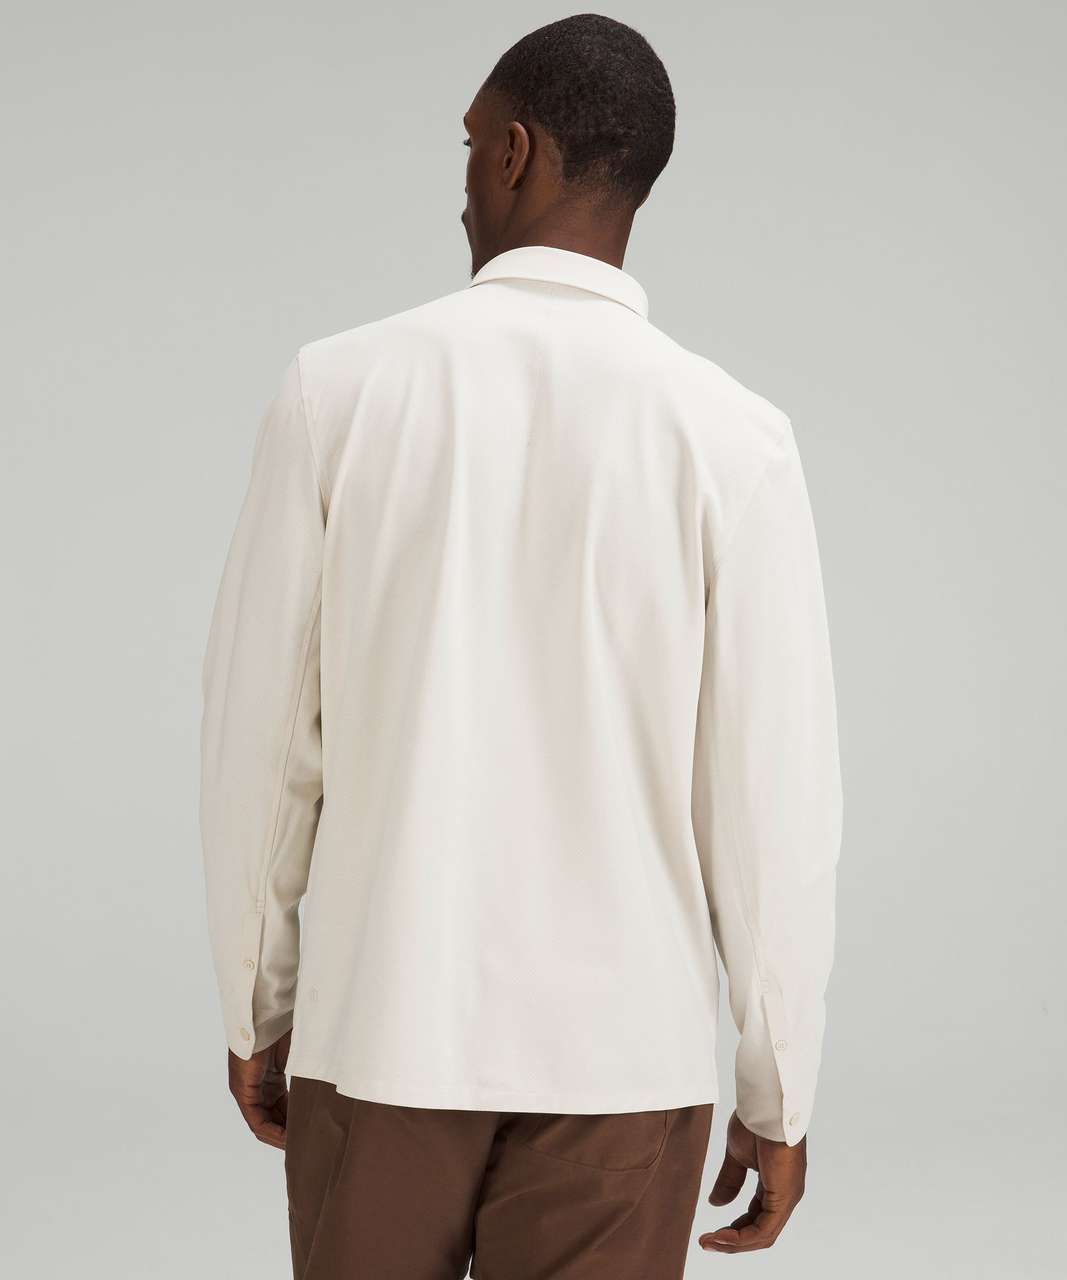 Lululemon WovenAir Long Sleeve Popover Shirt - Natural Ivory